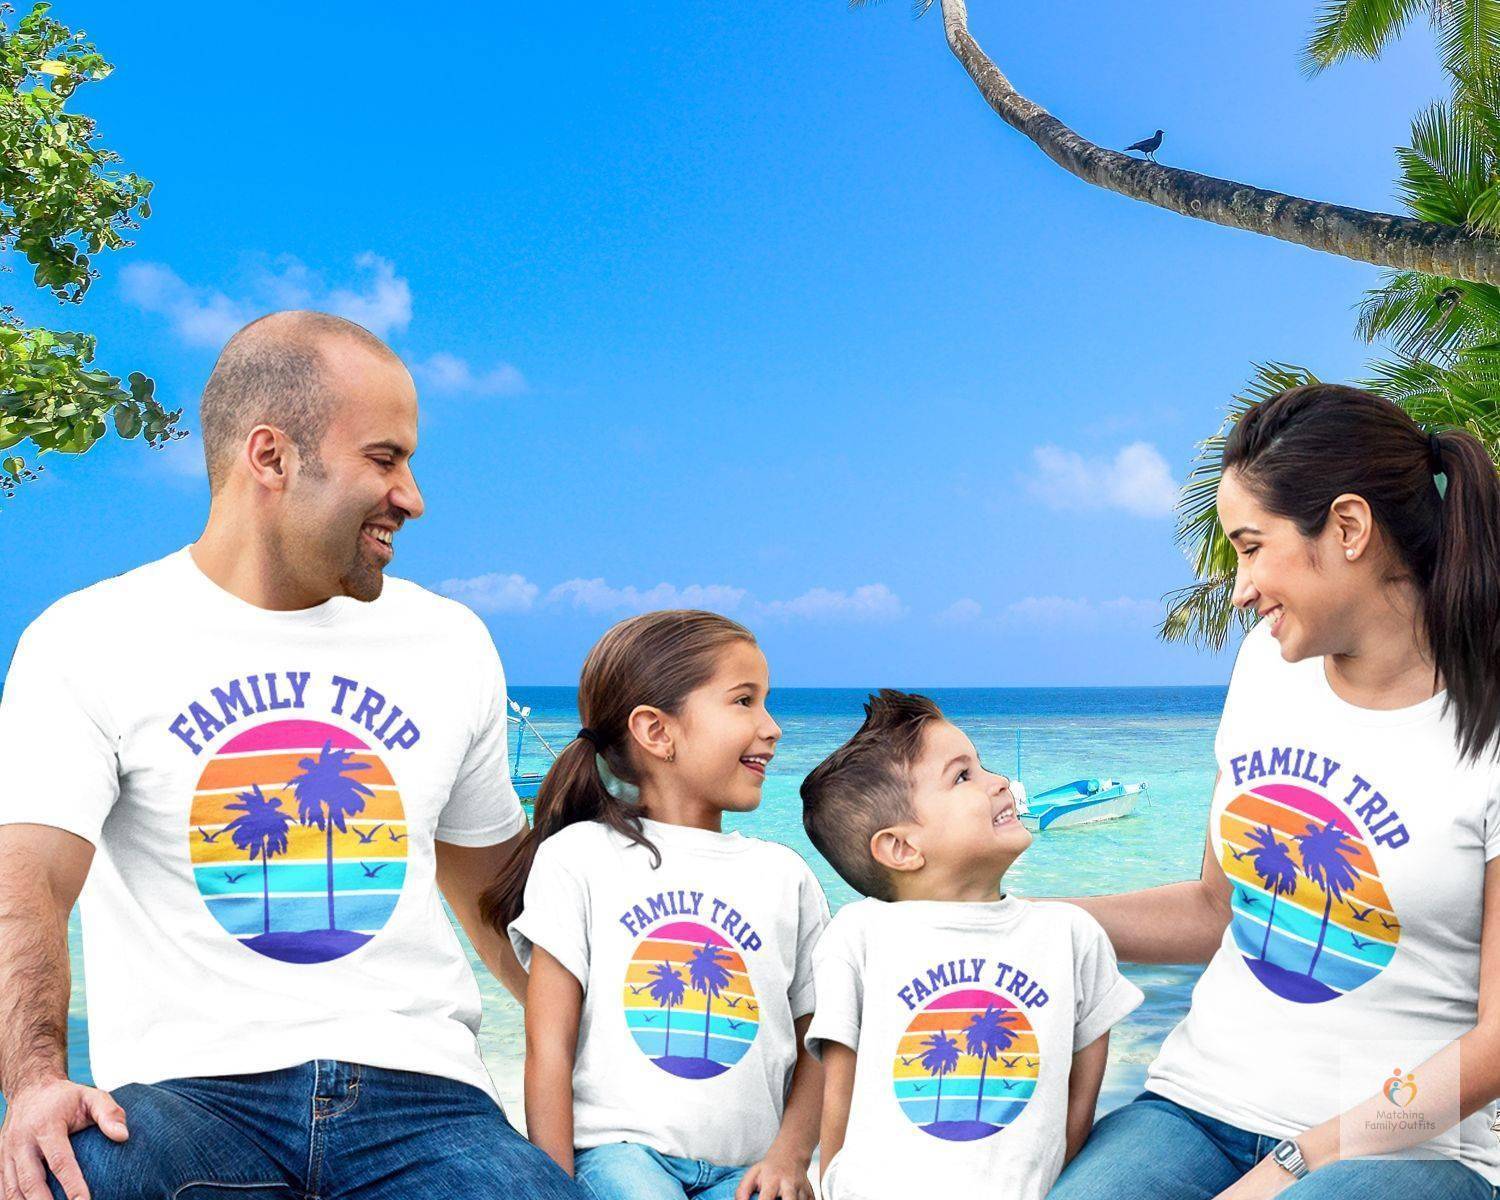 Family Vacation/Holiday Trip Vivid T-Shirts